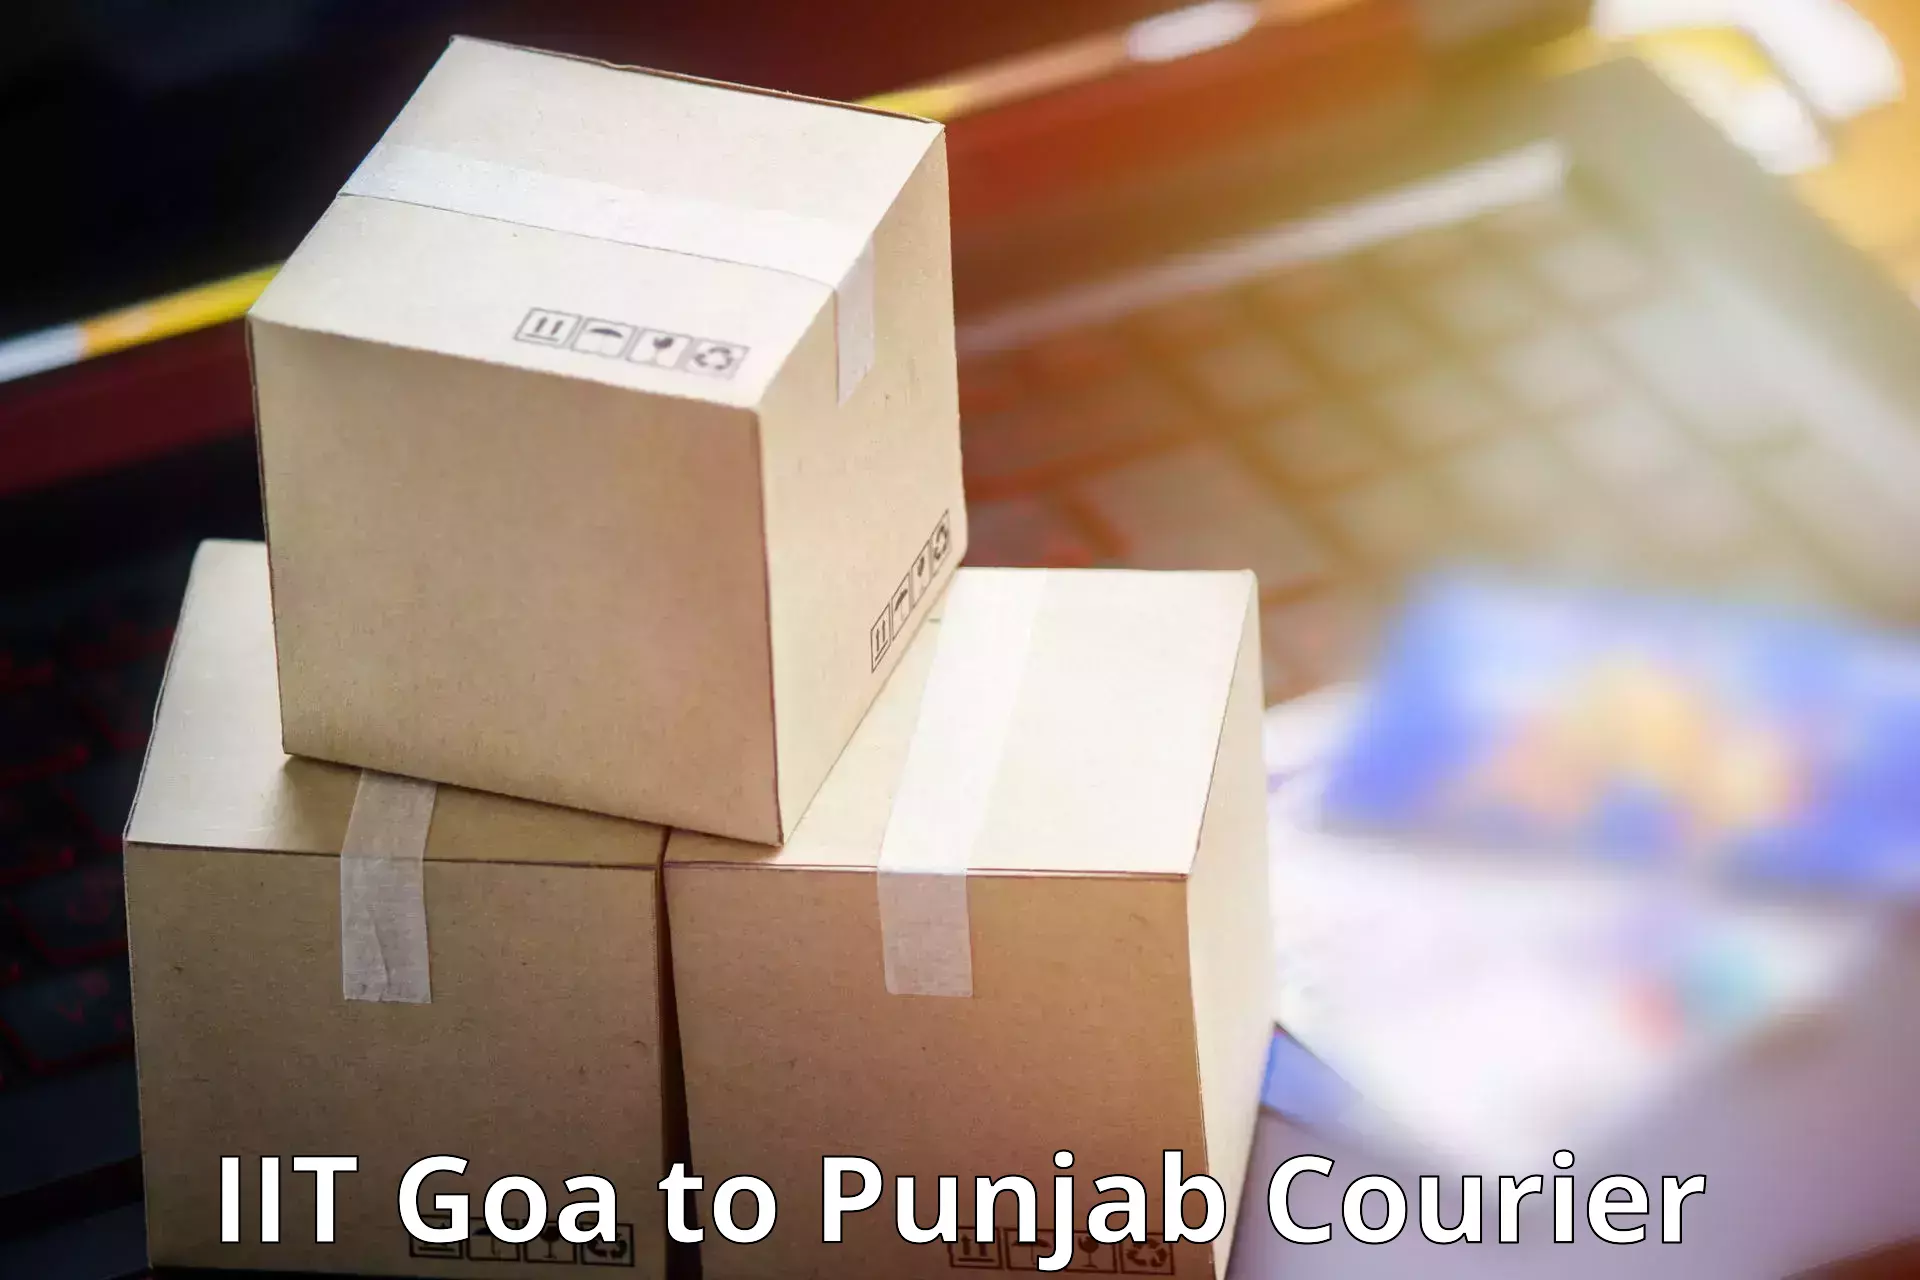 Customer-focused courier IIT Goa to Bathinda